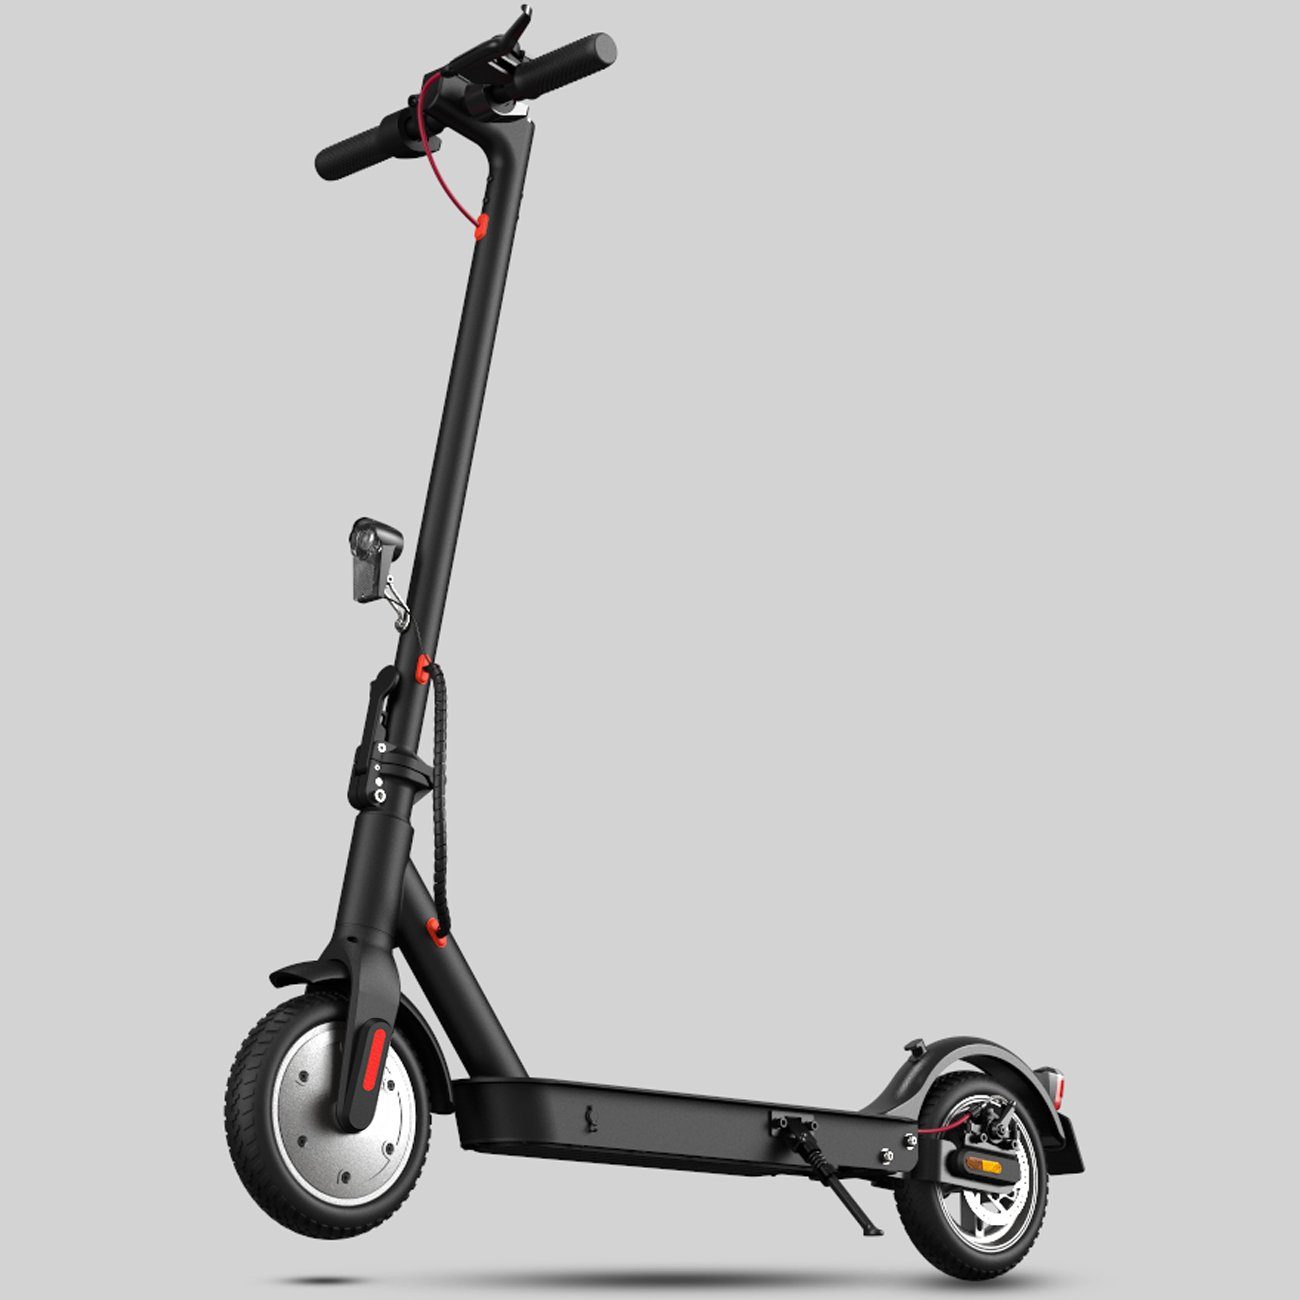 WILGOON E-Scooter Elektroscooter mit Straßenzulassung, Elektroroller mit  App&LED Display, 20,00 km/h, klappbar, extra breiter Lenker, schnelle Lade  Zeit